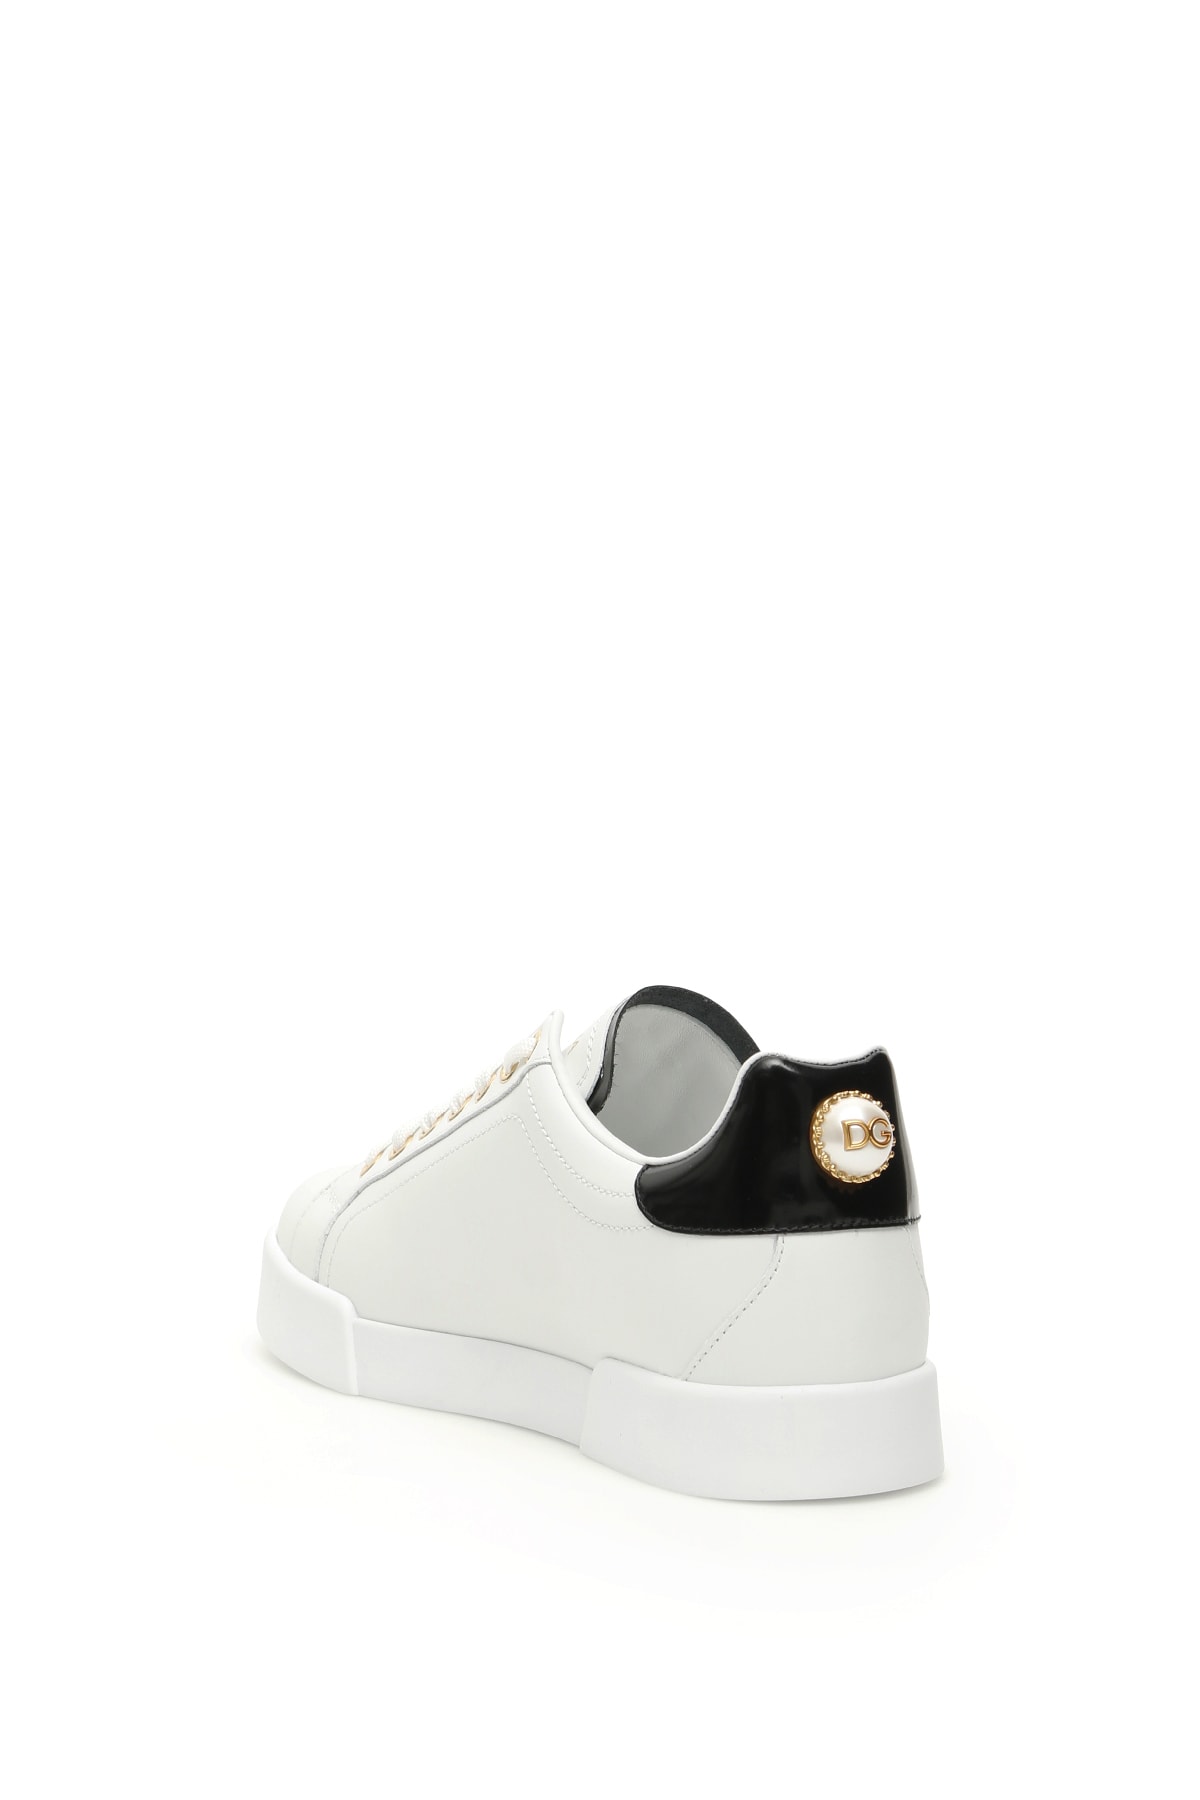 Shop Dolce & Gabbana Portofino Leather Sneakers Dg Pearl In Bianco Oro